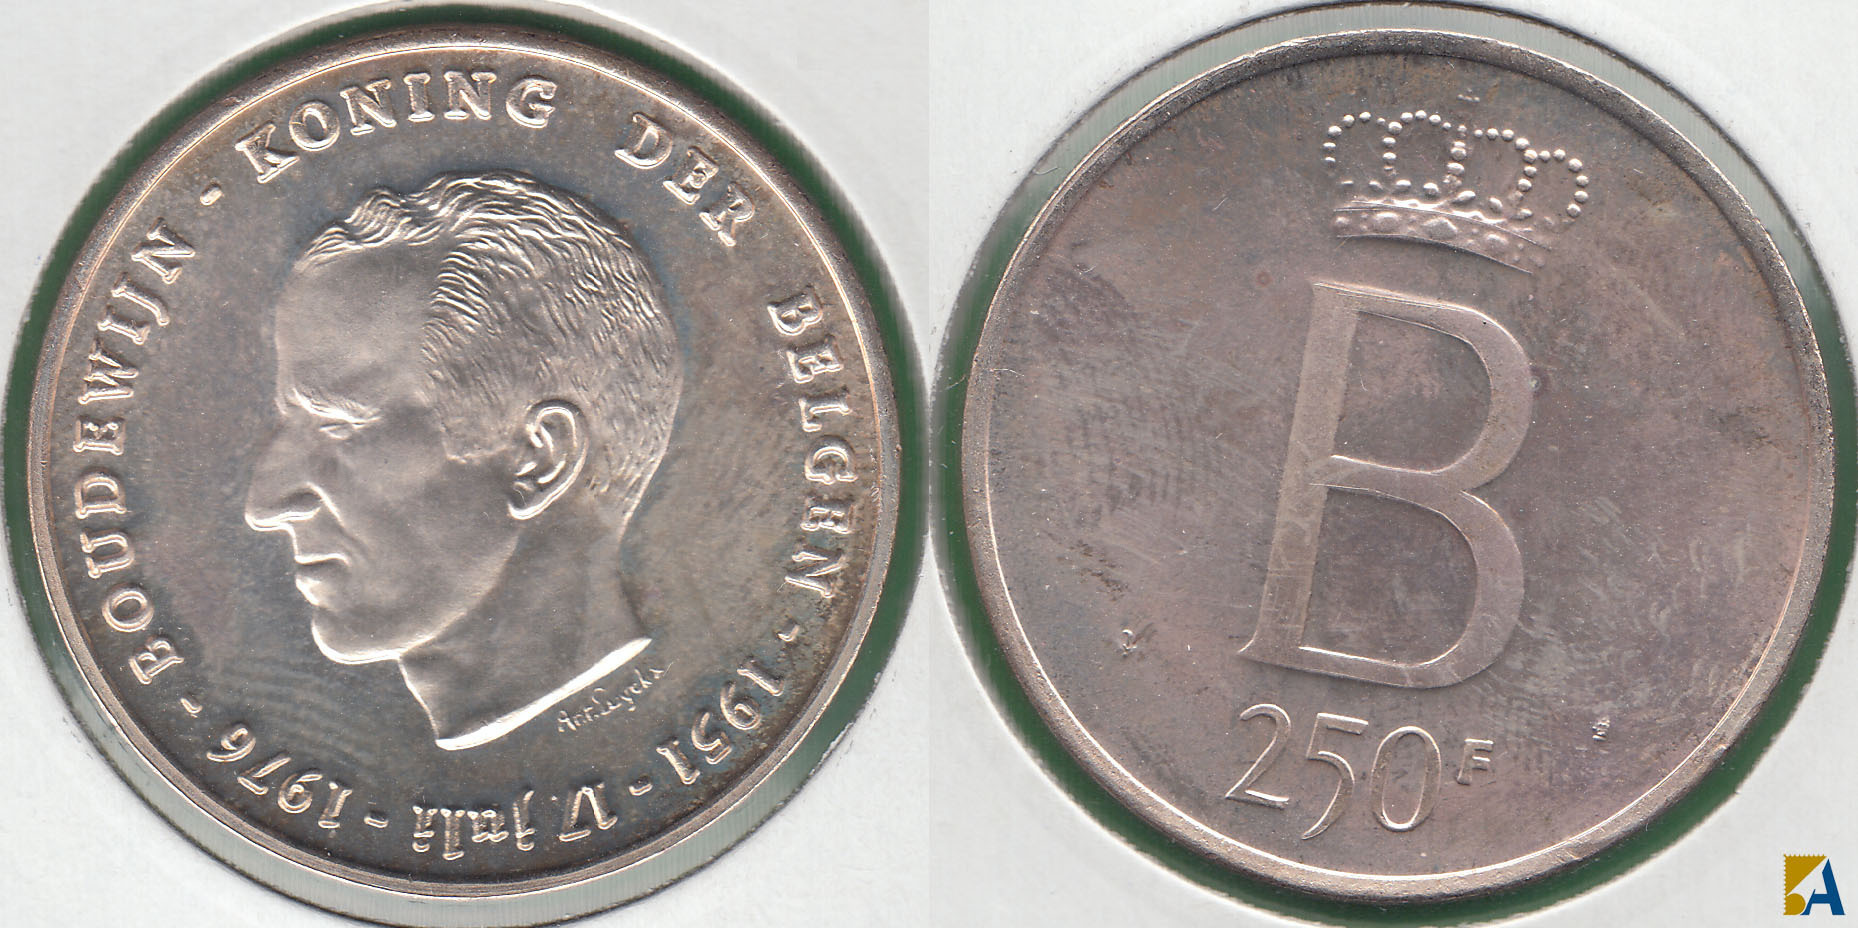 BELGICA - BELGIUM. 250 FRANCOS (FRANCS) DE 1976. PLATA 0.835. (4)